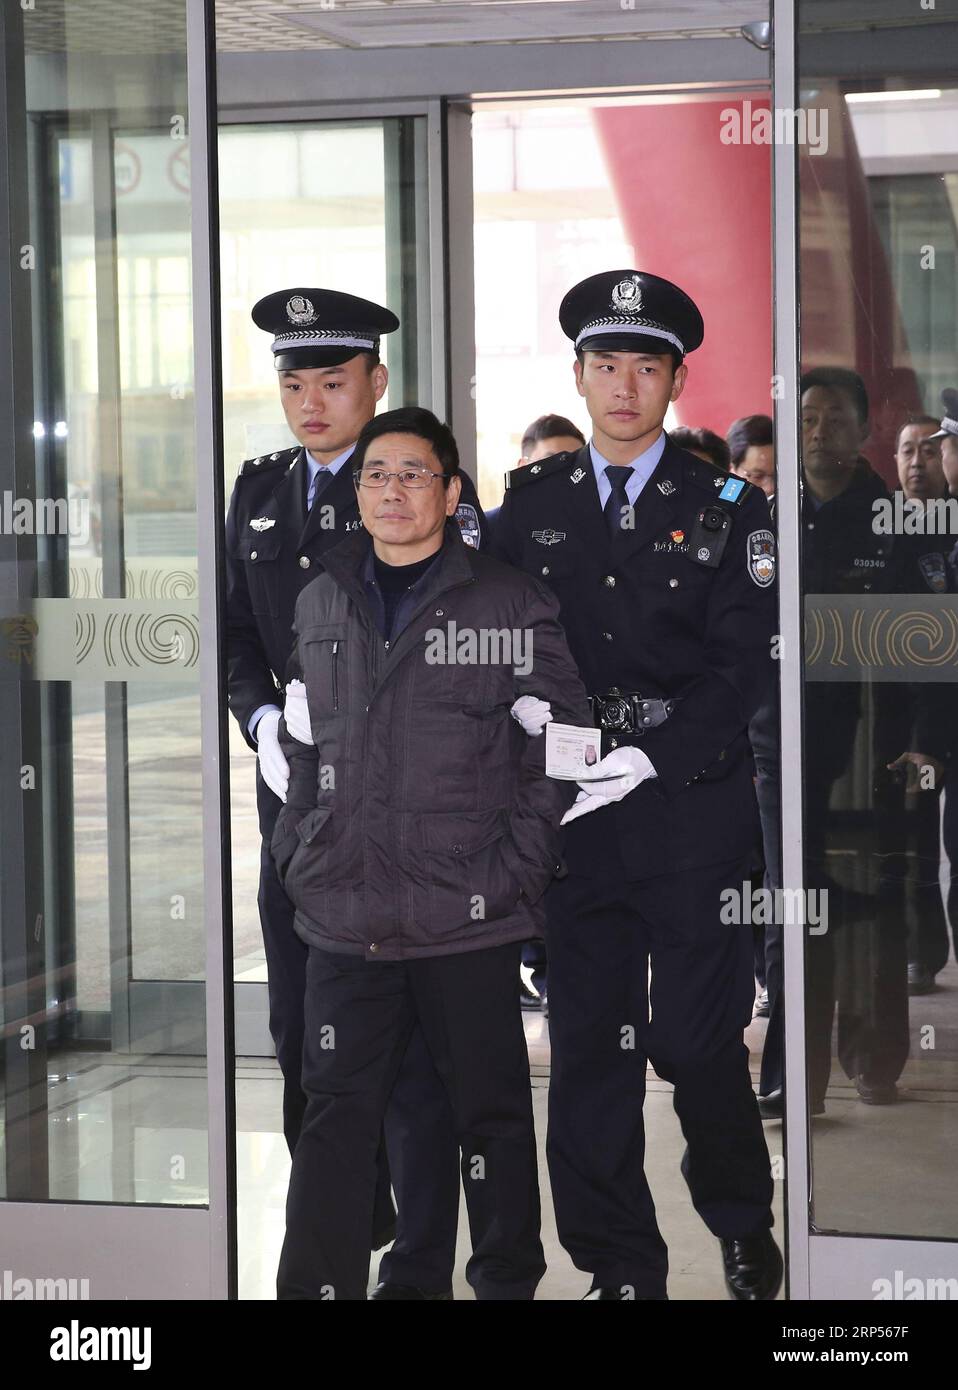 (181130) -- PÉKIN, 30 novembre 2018 (Xinhua) -- Yao Jinqi est escorté par la police à l'aéroport international Capital de Pékin, capitale de la Chine, le 30 novembre 2018. Yao Jinqi, un suspect de crime de service et ancien chef adjoint du comté de Xinchang dans la province du Zhejiang de l est de la Chine, a été extradé vendredi vers la Chine depuis la Bulgarie. Yao, qui a fui à l'étranger en décembre 2005, est devenu le premier ancien fonctionnaire chinois extradé d'un État membre de l'UE. Coordonné par un bureau chargé du rapatriement des fugitifs et du recouvrement des avoirs relevant du groupe central de coordination de la lutte contre la corruption en Chine, ce fut aussi le premier succès Banque D'Images